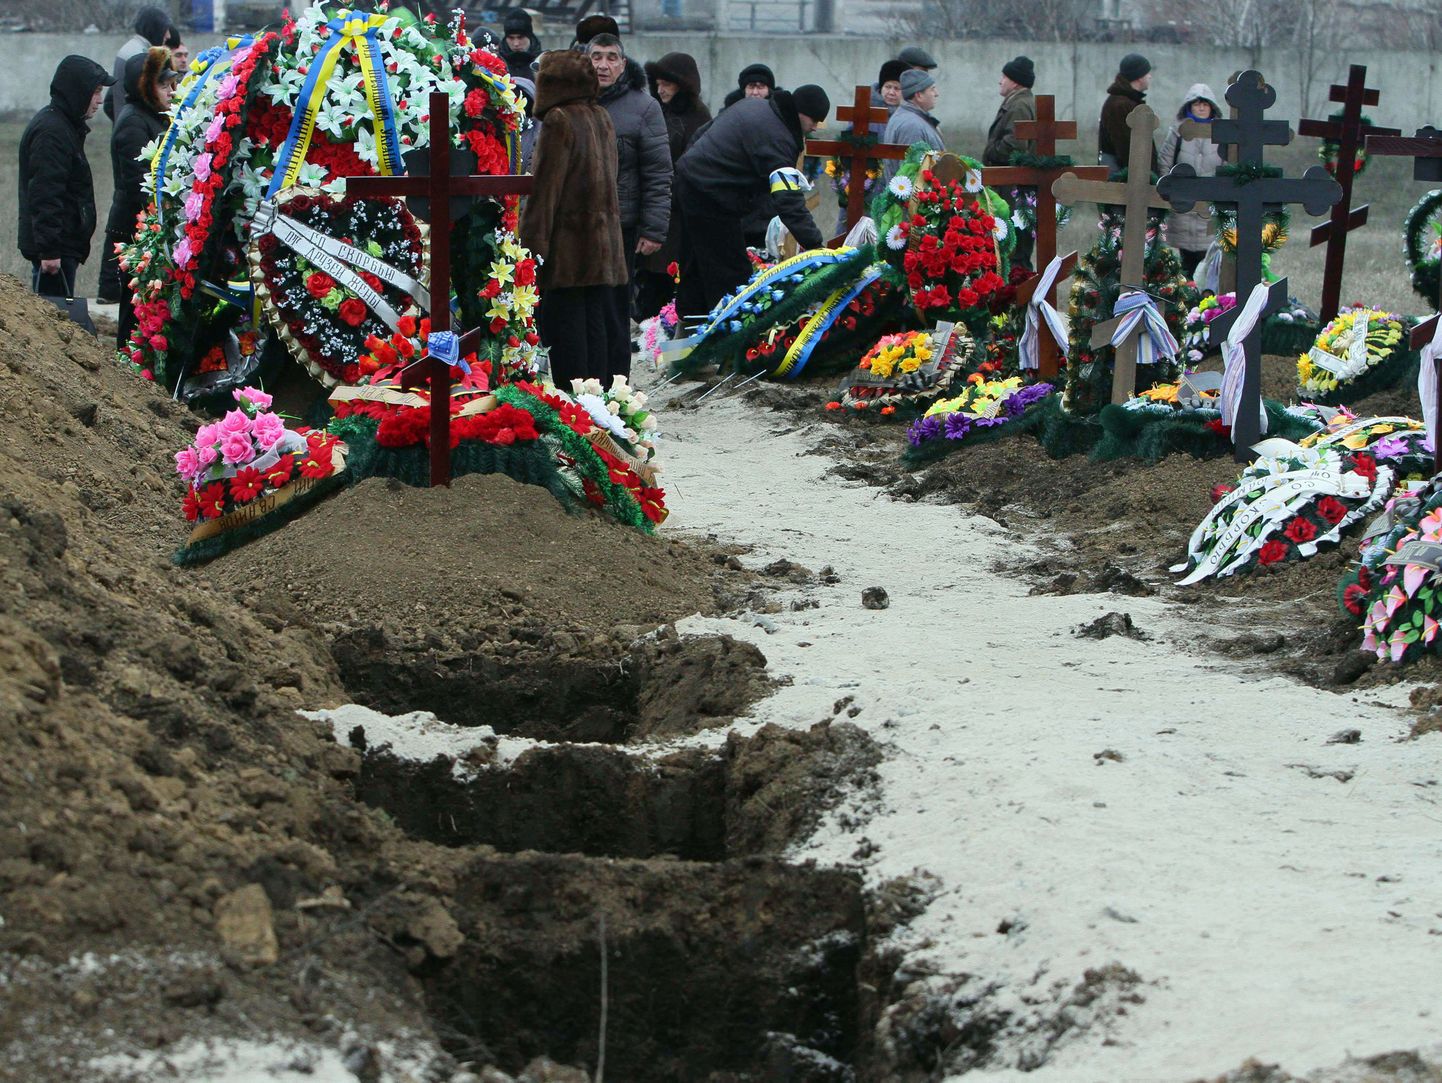 Lähedased jätsid eile Mariupoli kalmistul hüvasti laupäevases rünnakus hukkunutega.